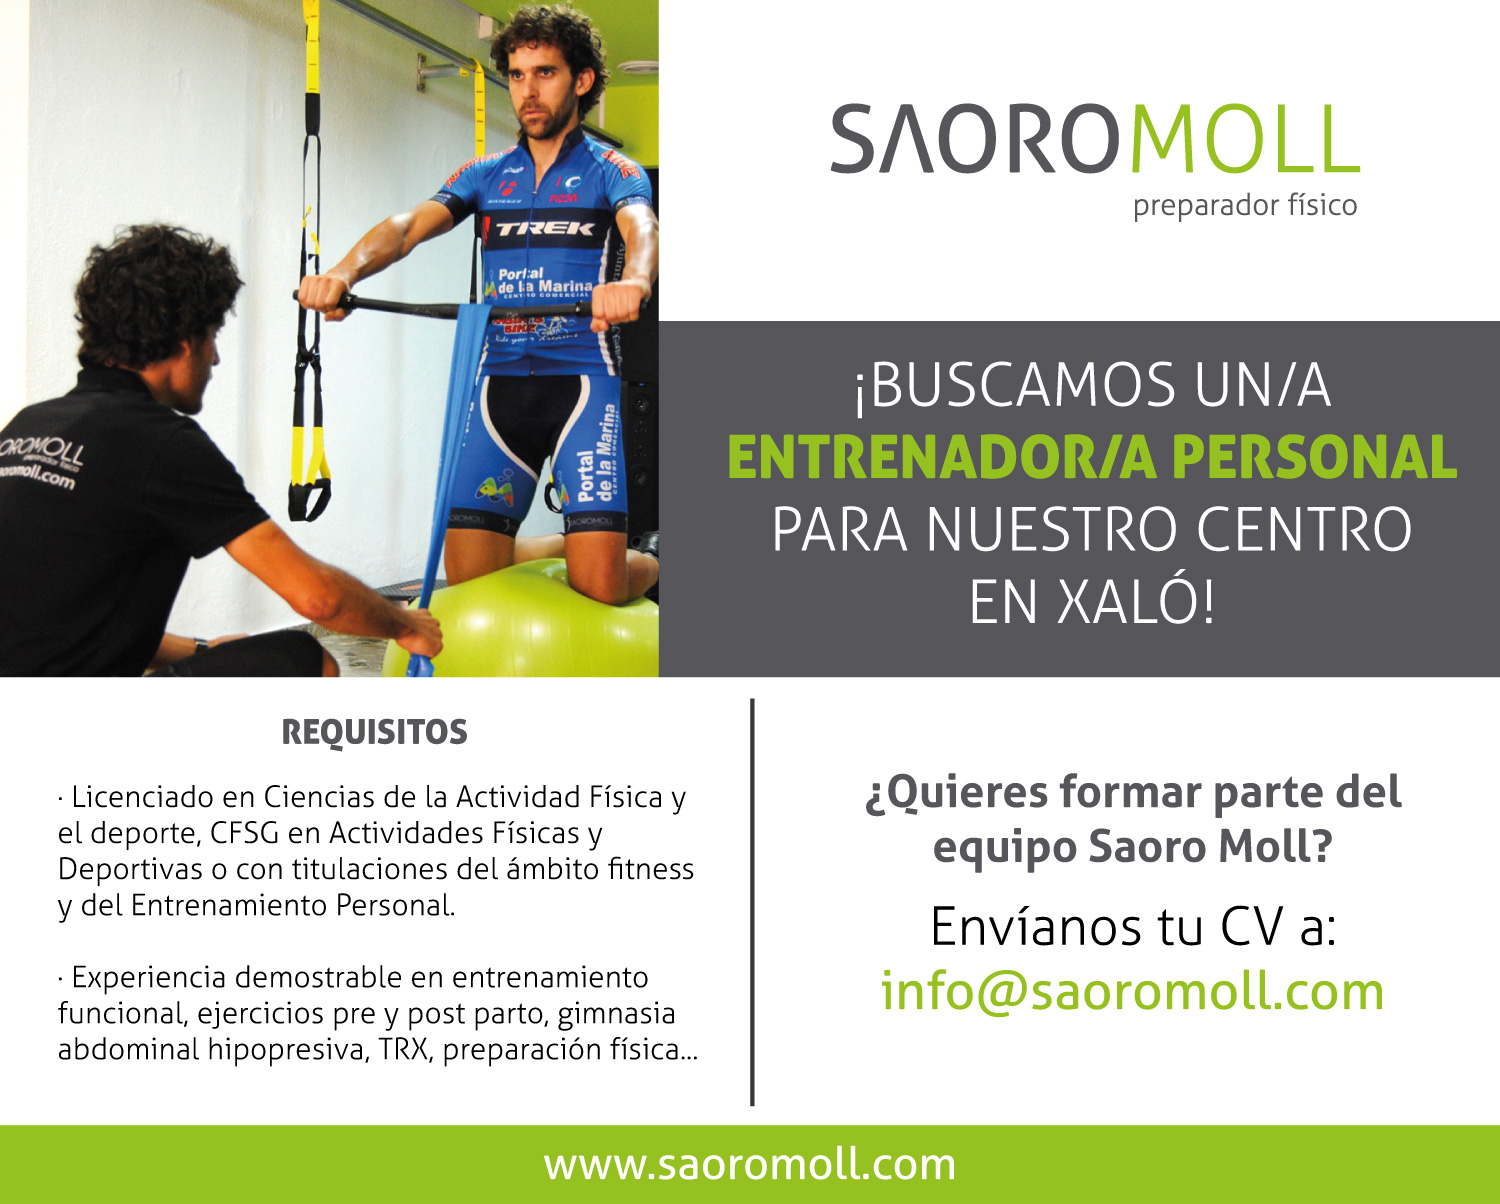 ¡Buscamos un/a entrenador/a personal para nuestro centro en Xaló!